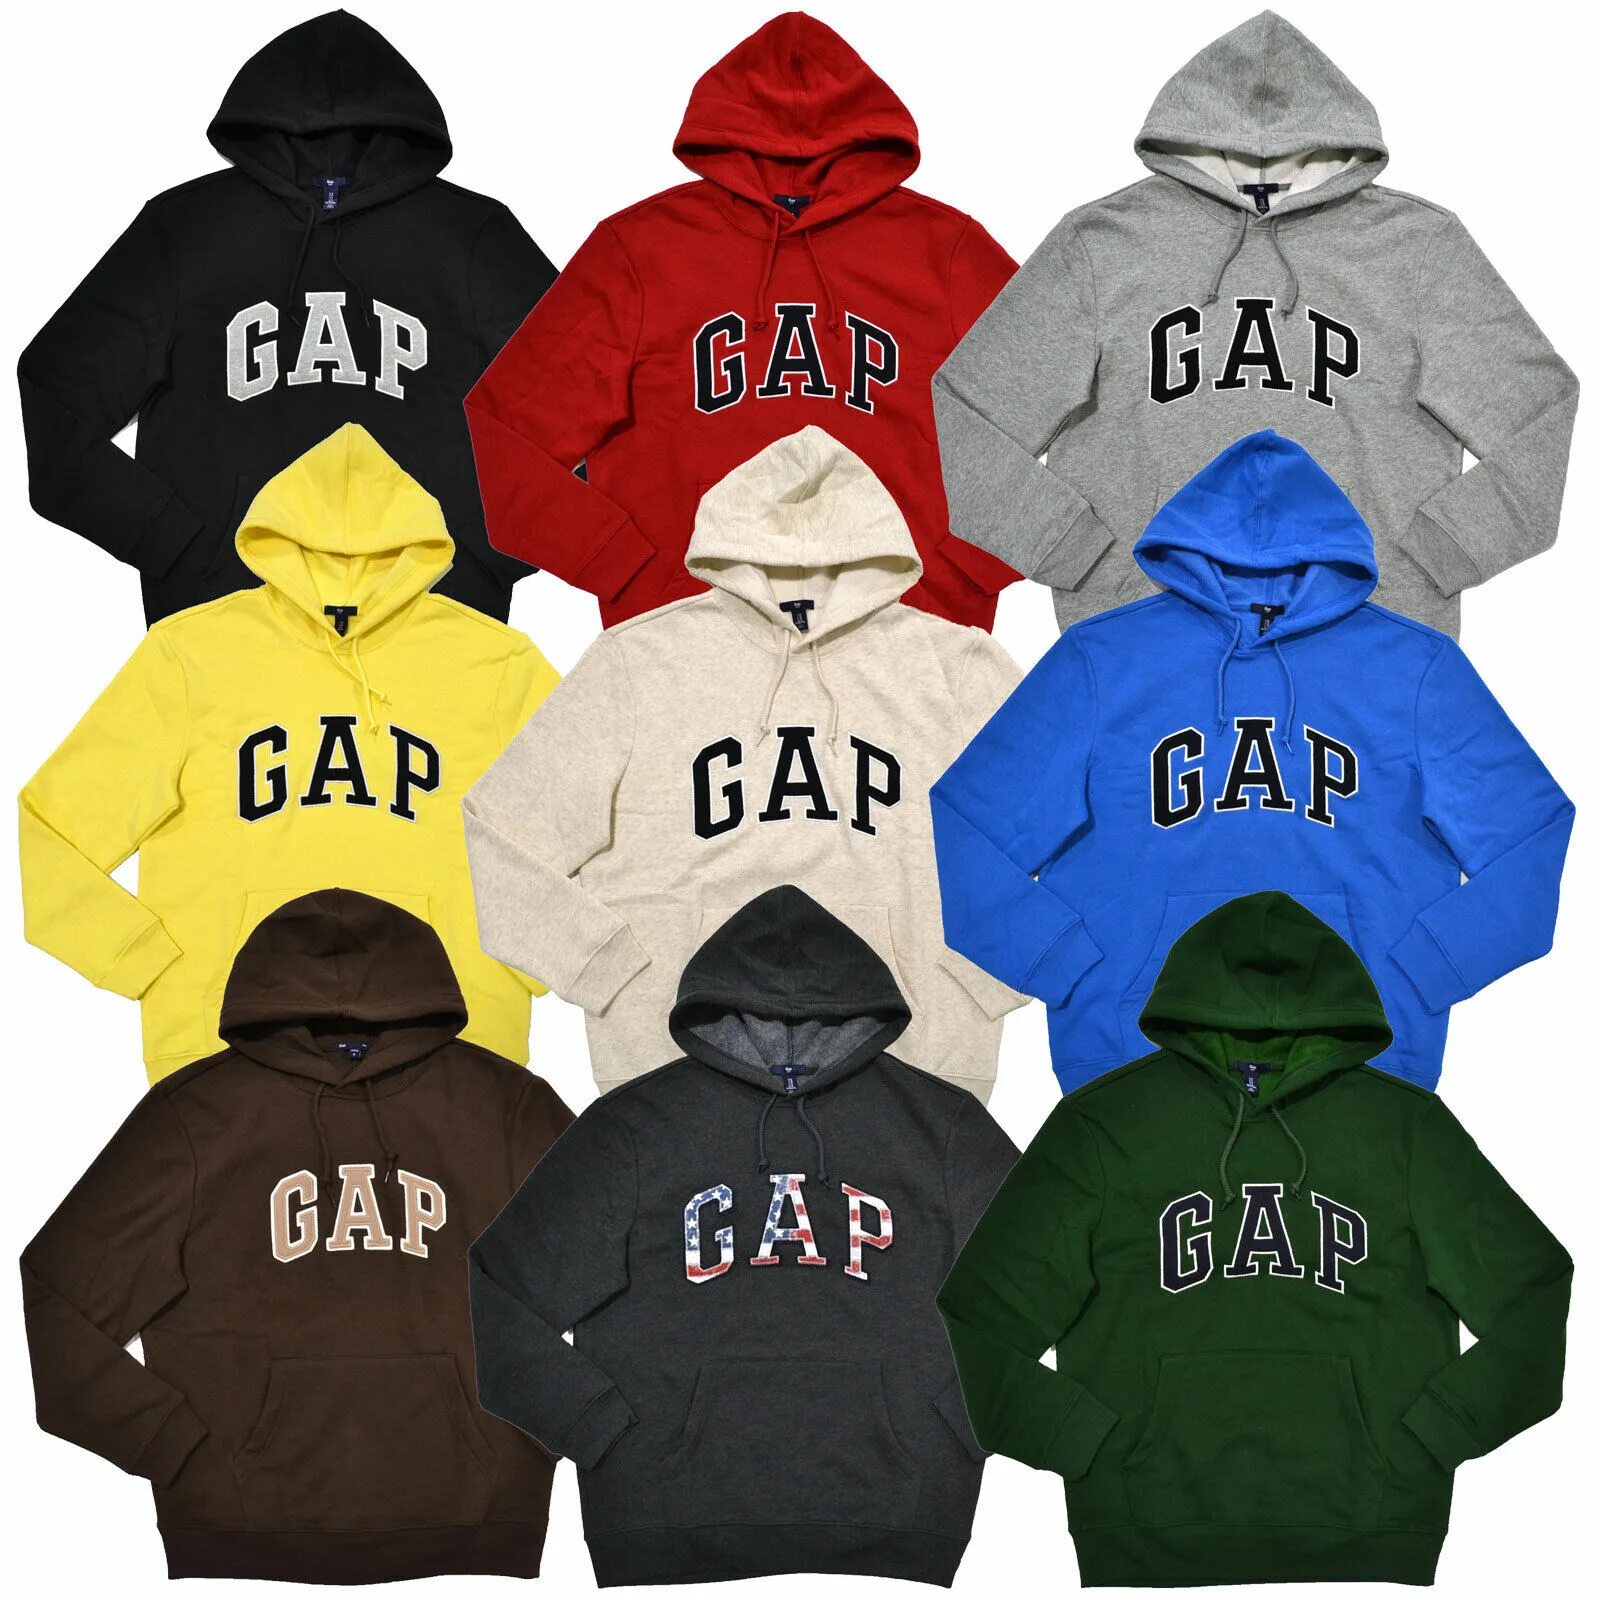 Gap компания. Gap бренд. Гап одежда. Марка одежды gap. Gap одежда логотип.